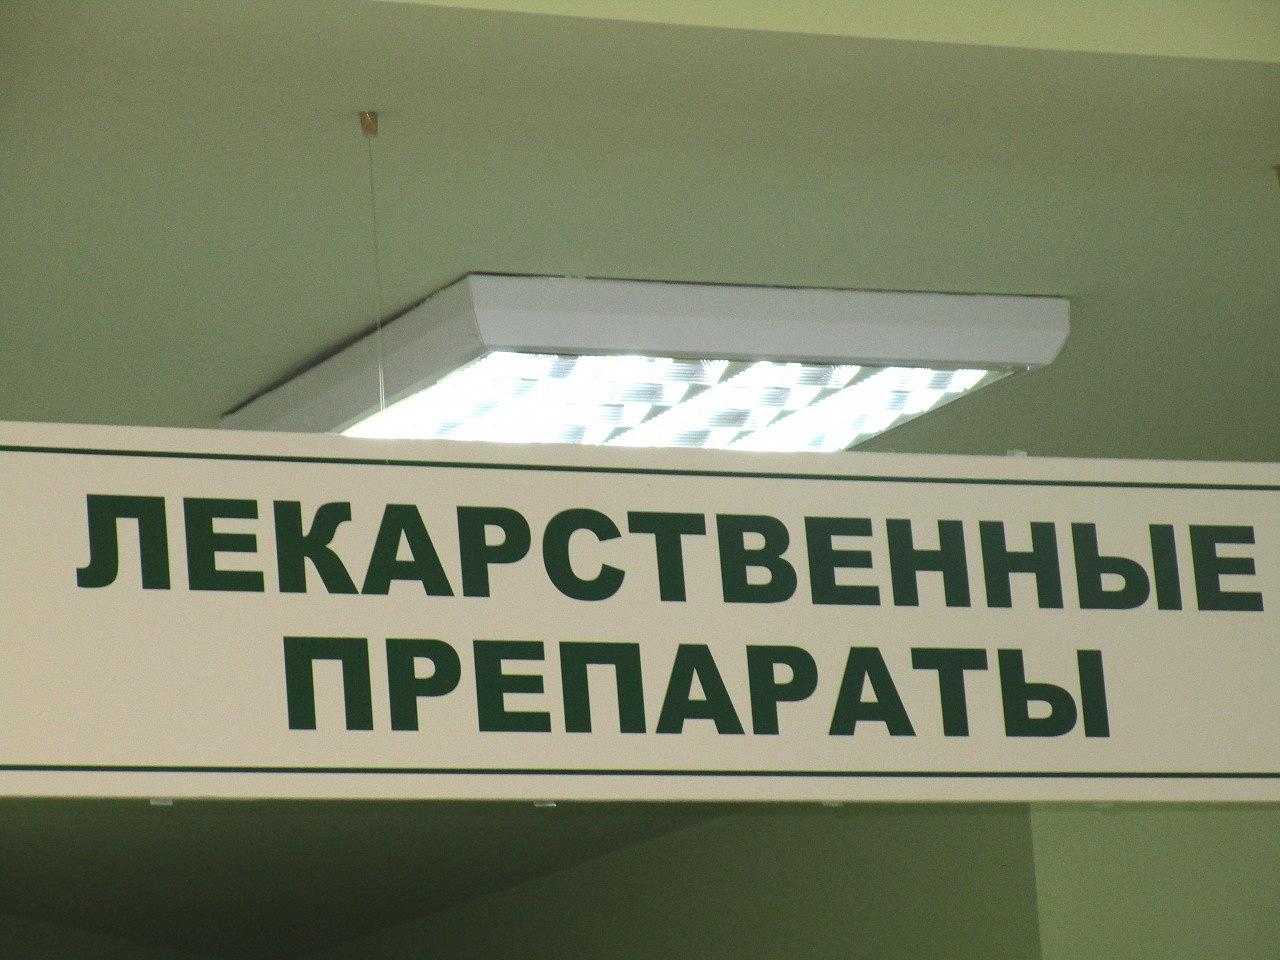 По льготным лекарственным препаратам уже заключено более двухсот контрактов на четыреста сорок миллионов рублей